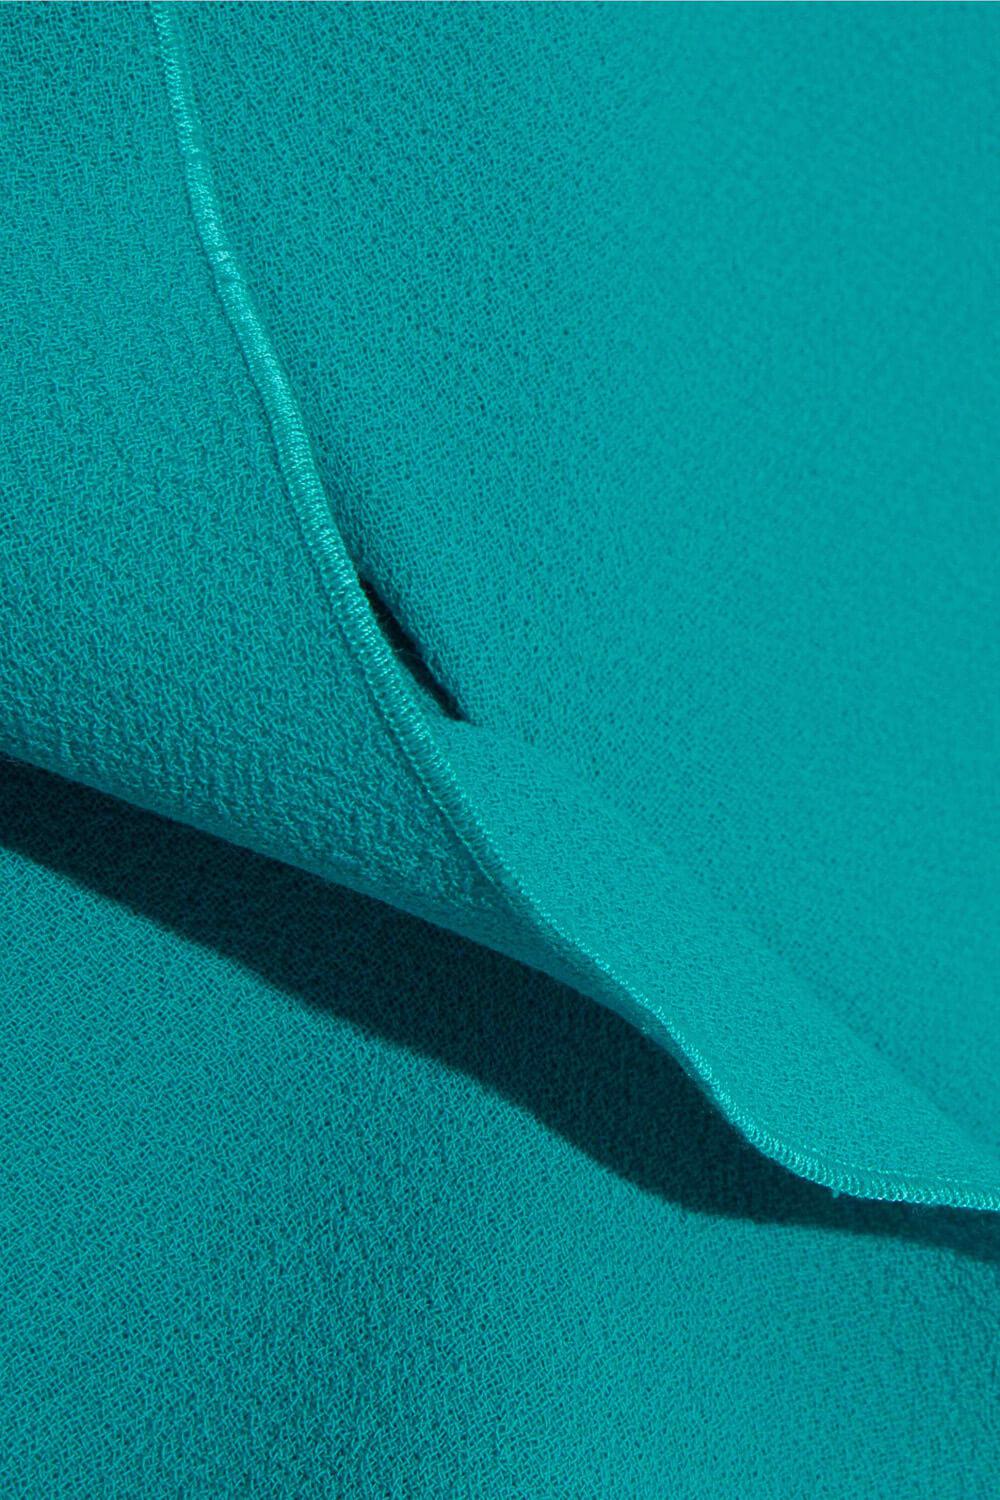 Шерстяной креп Roland Mouret 019-2016, цвет Голубой, фото 3